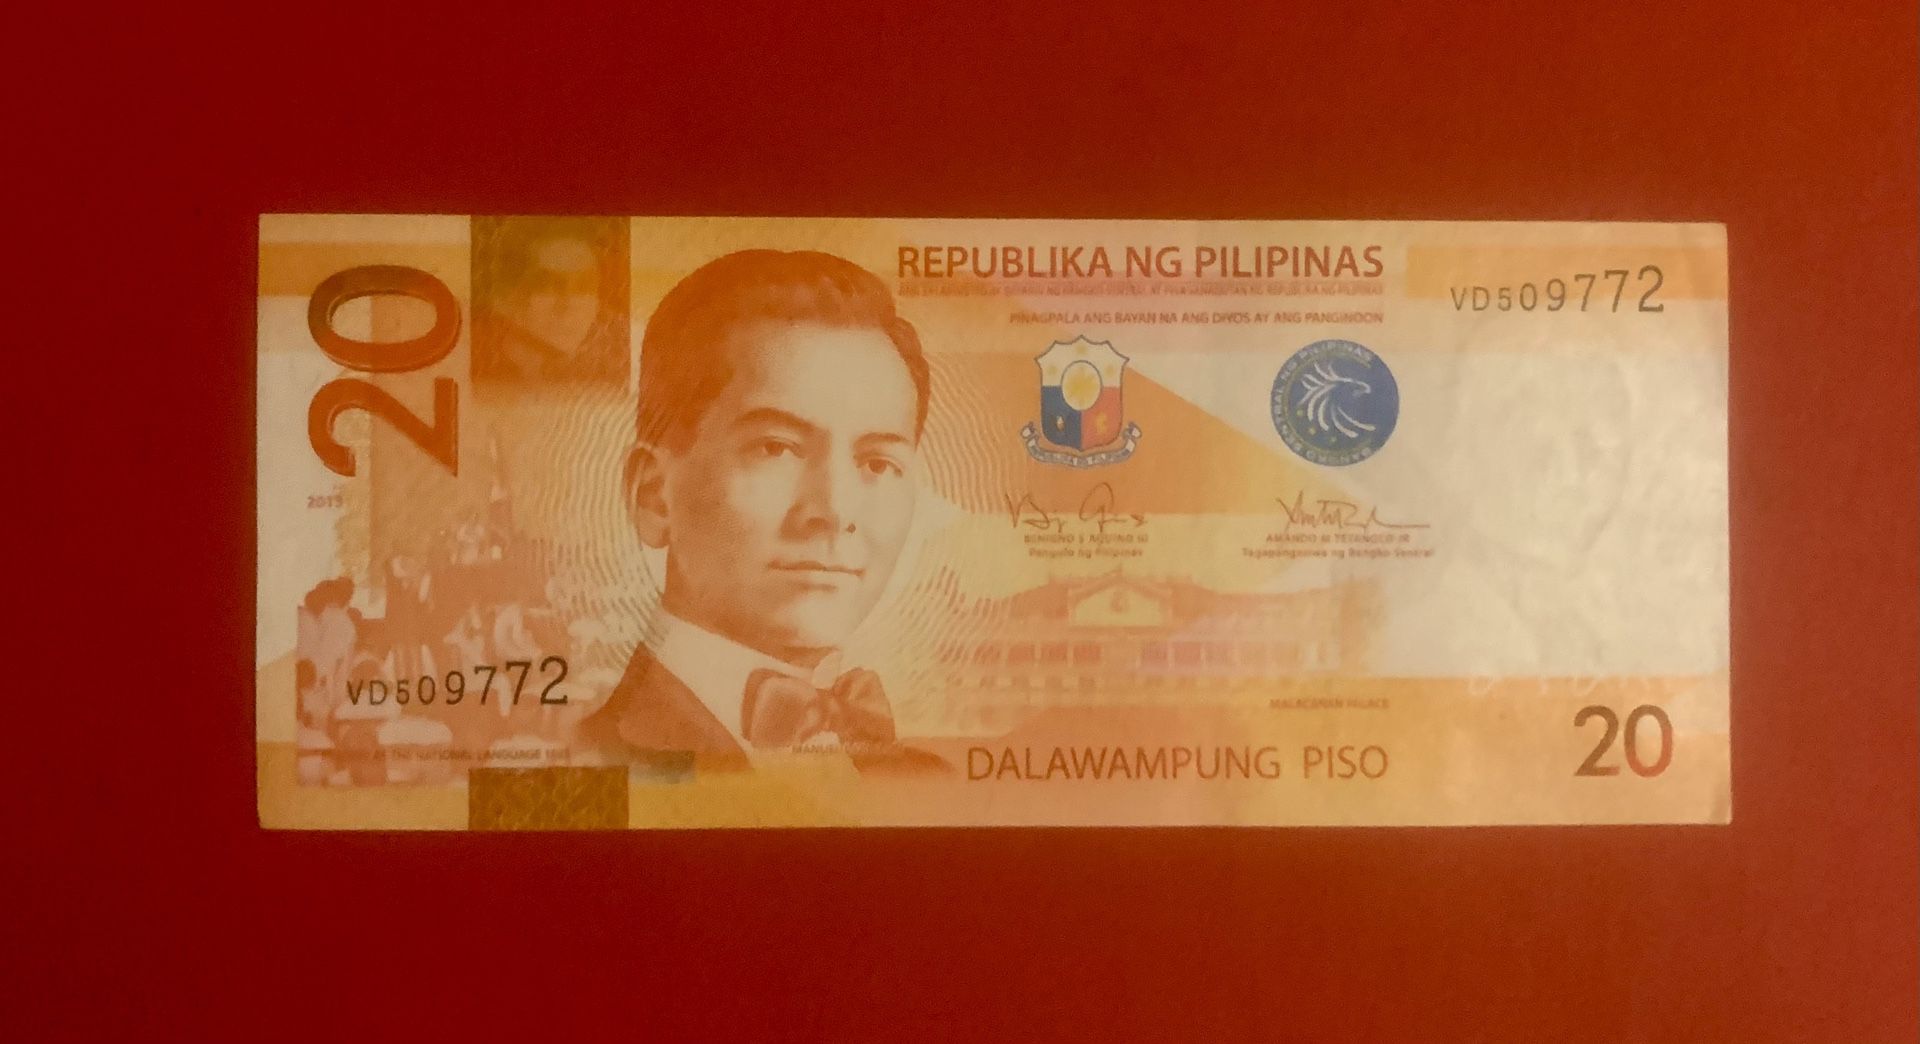  Bill Currency/Republica NG  pilipinas   